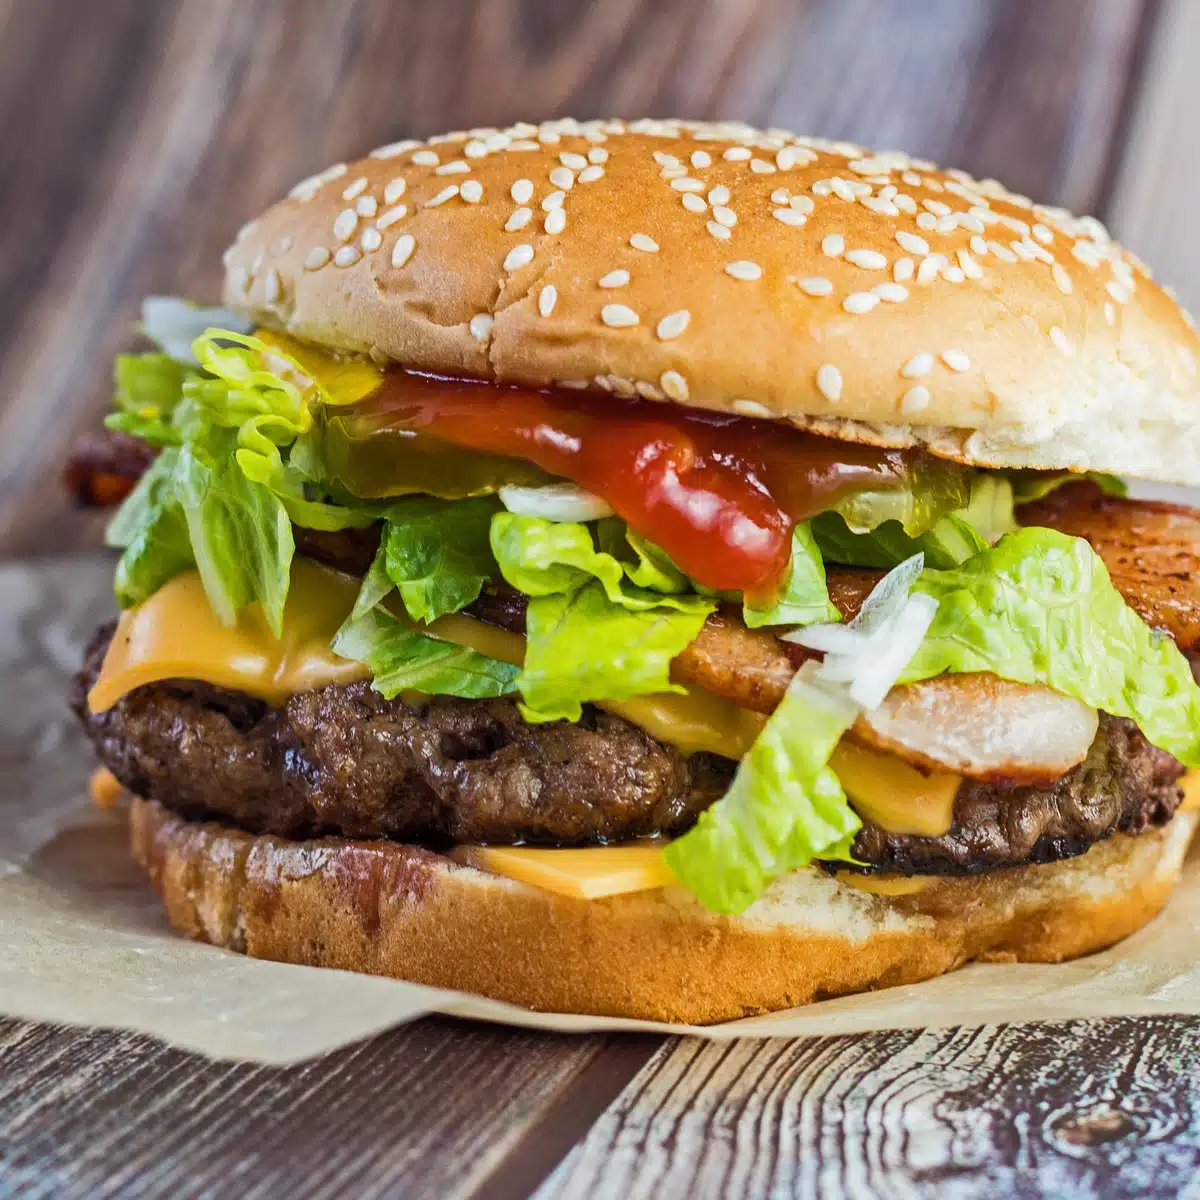 Квадратное изображение чизбургера с салатом.